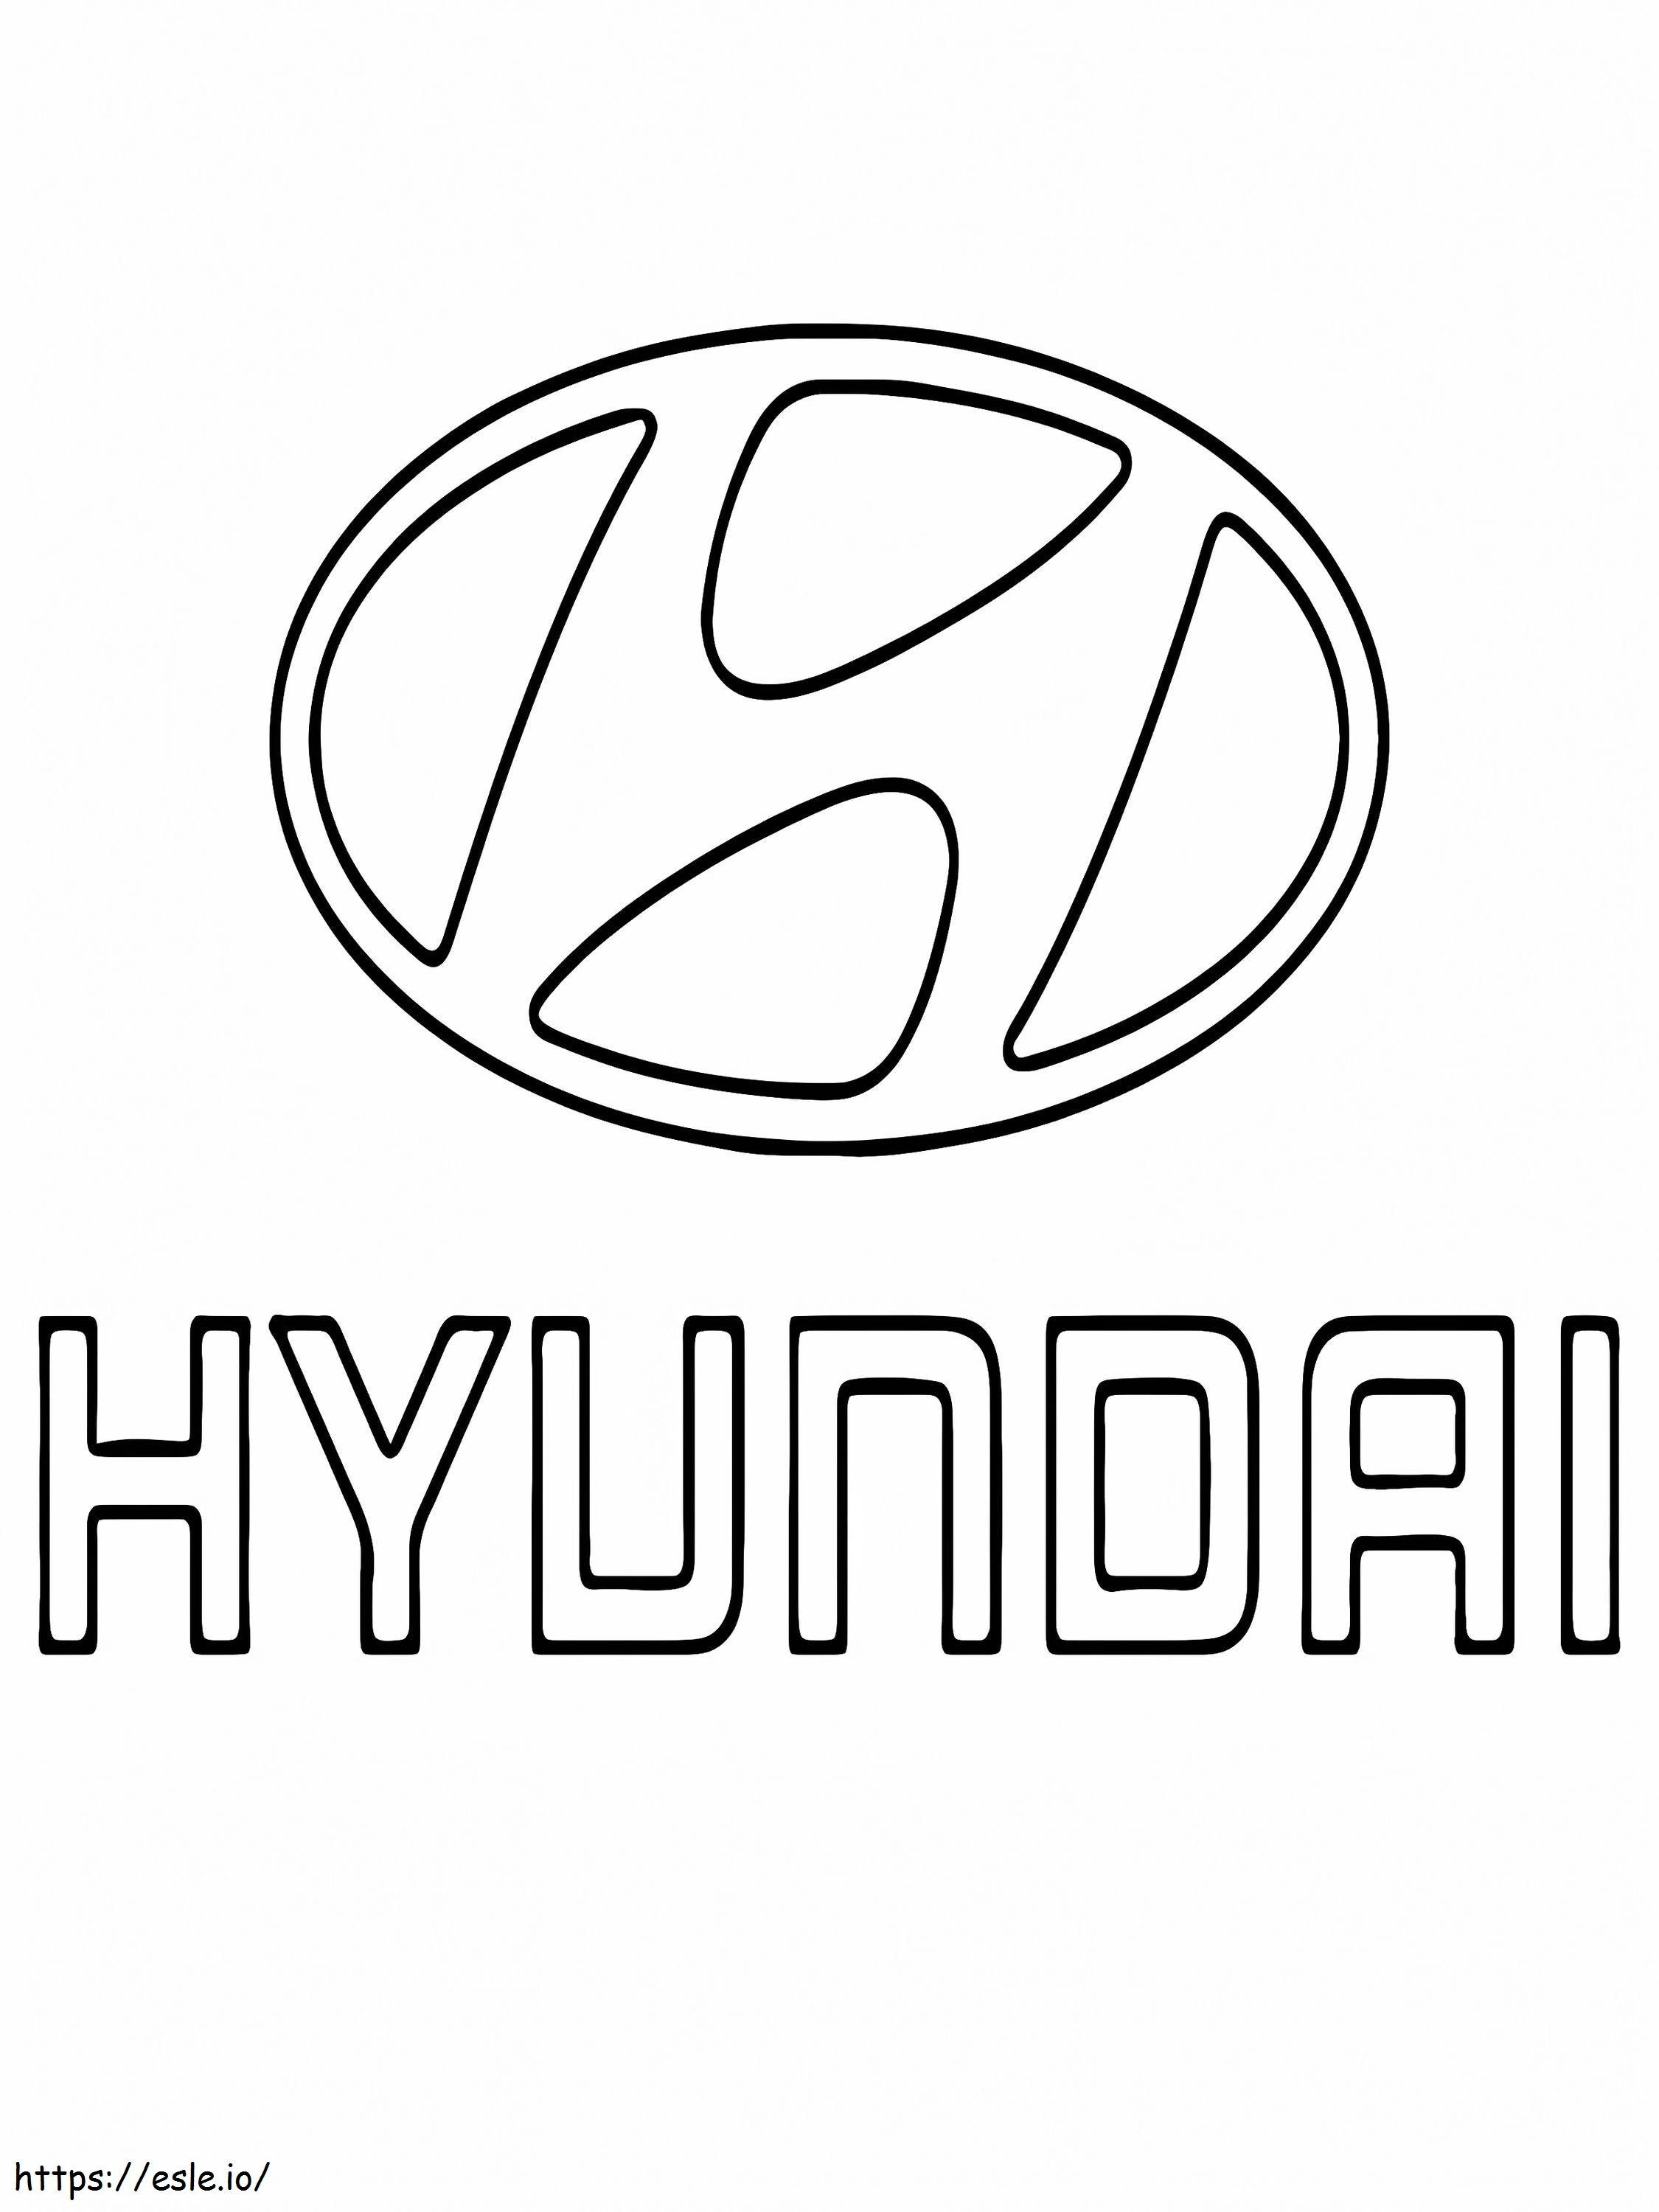 Hyundai Car Logo coloring page